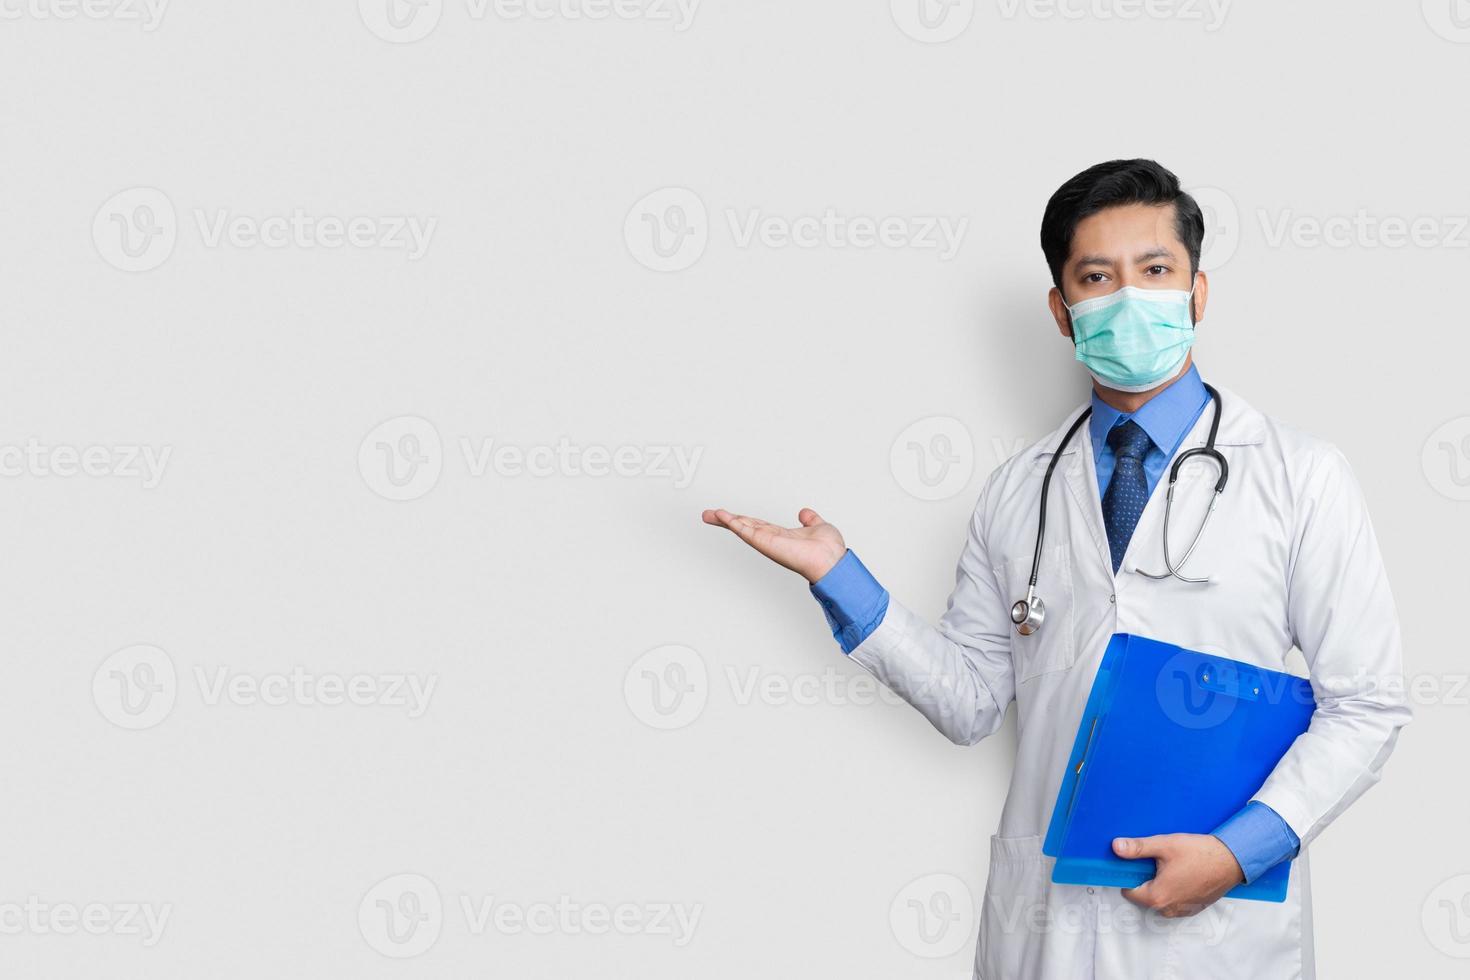 médico segurando o estetoscópio sorrindo enquanto apresenta o arquivo na mão, isolado no fundo branco com espaço de cópia foto